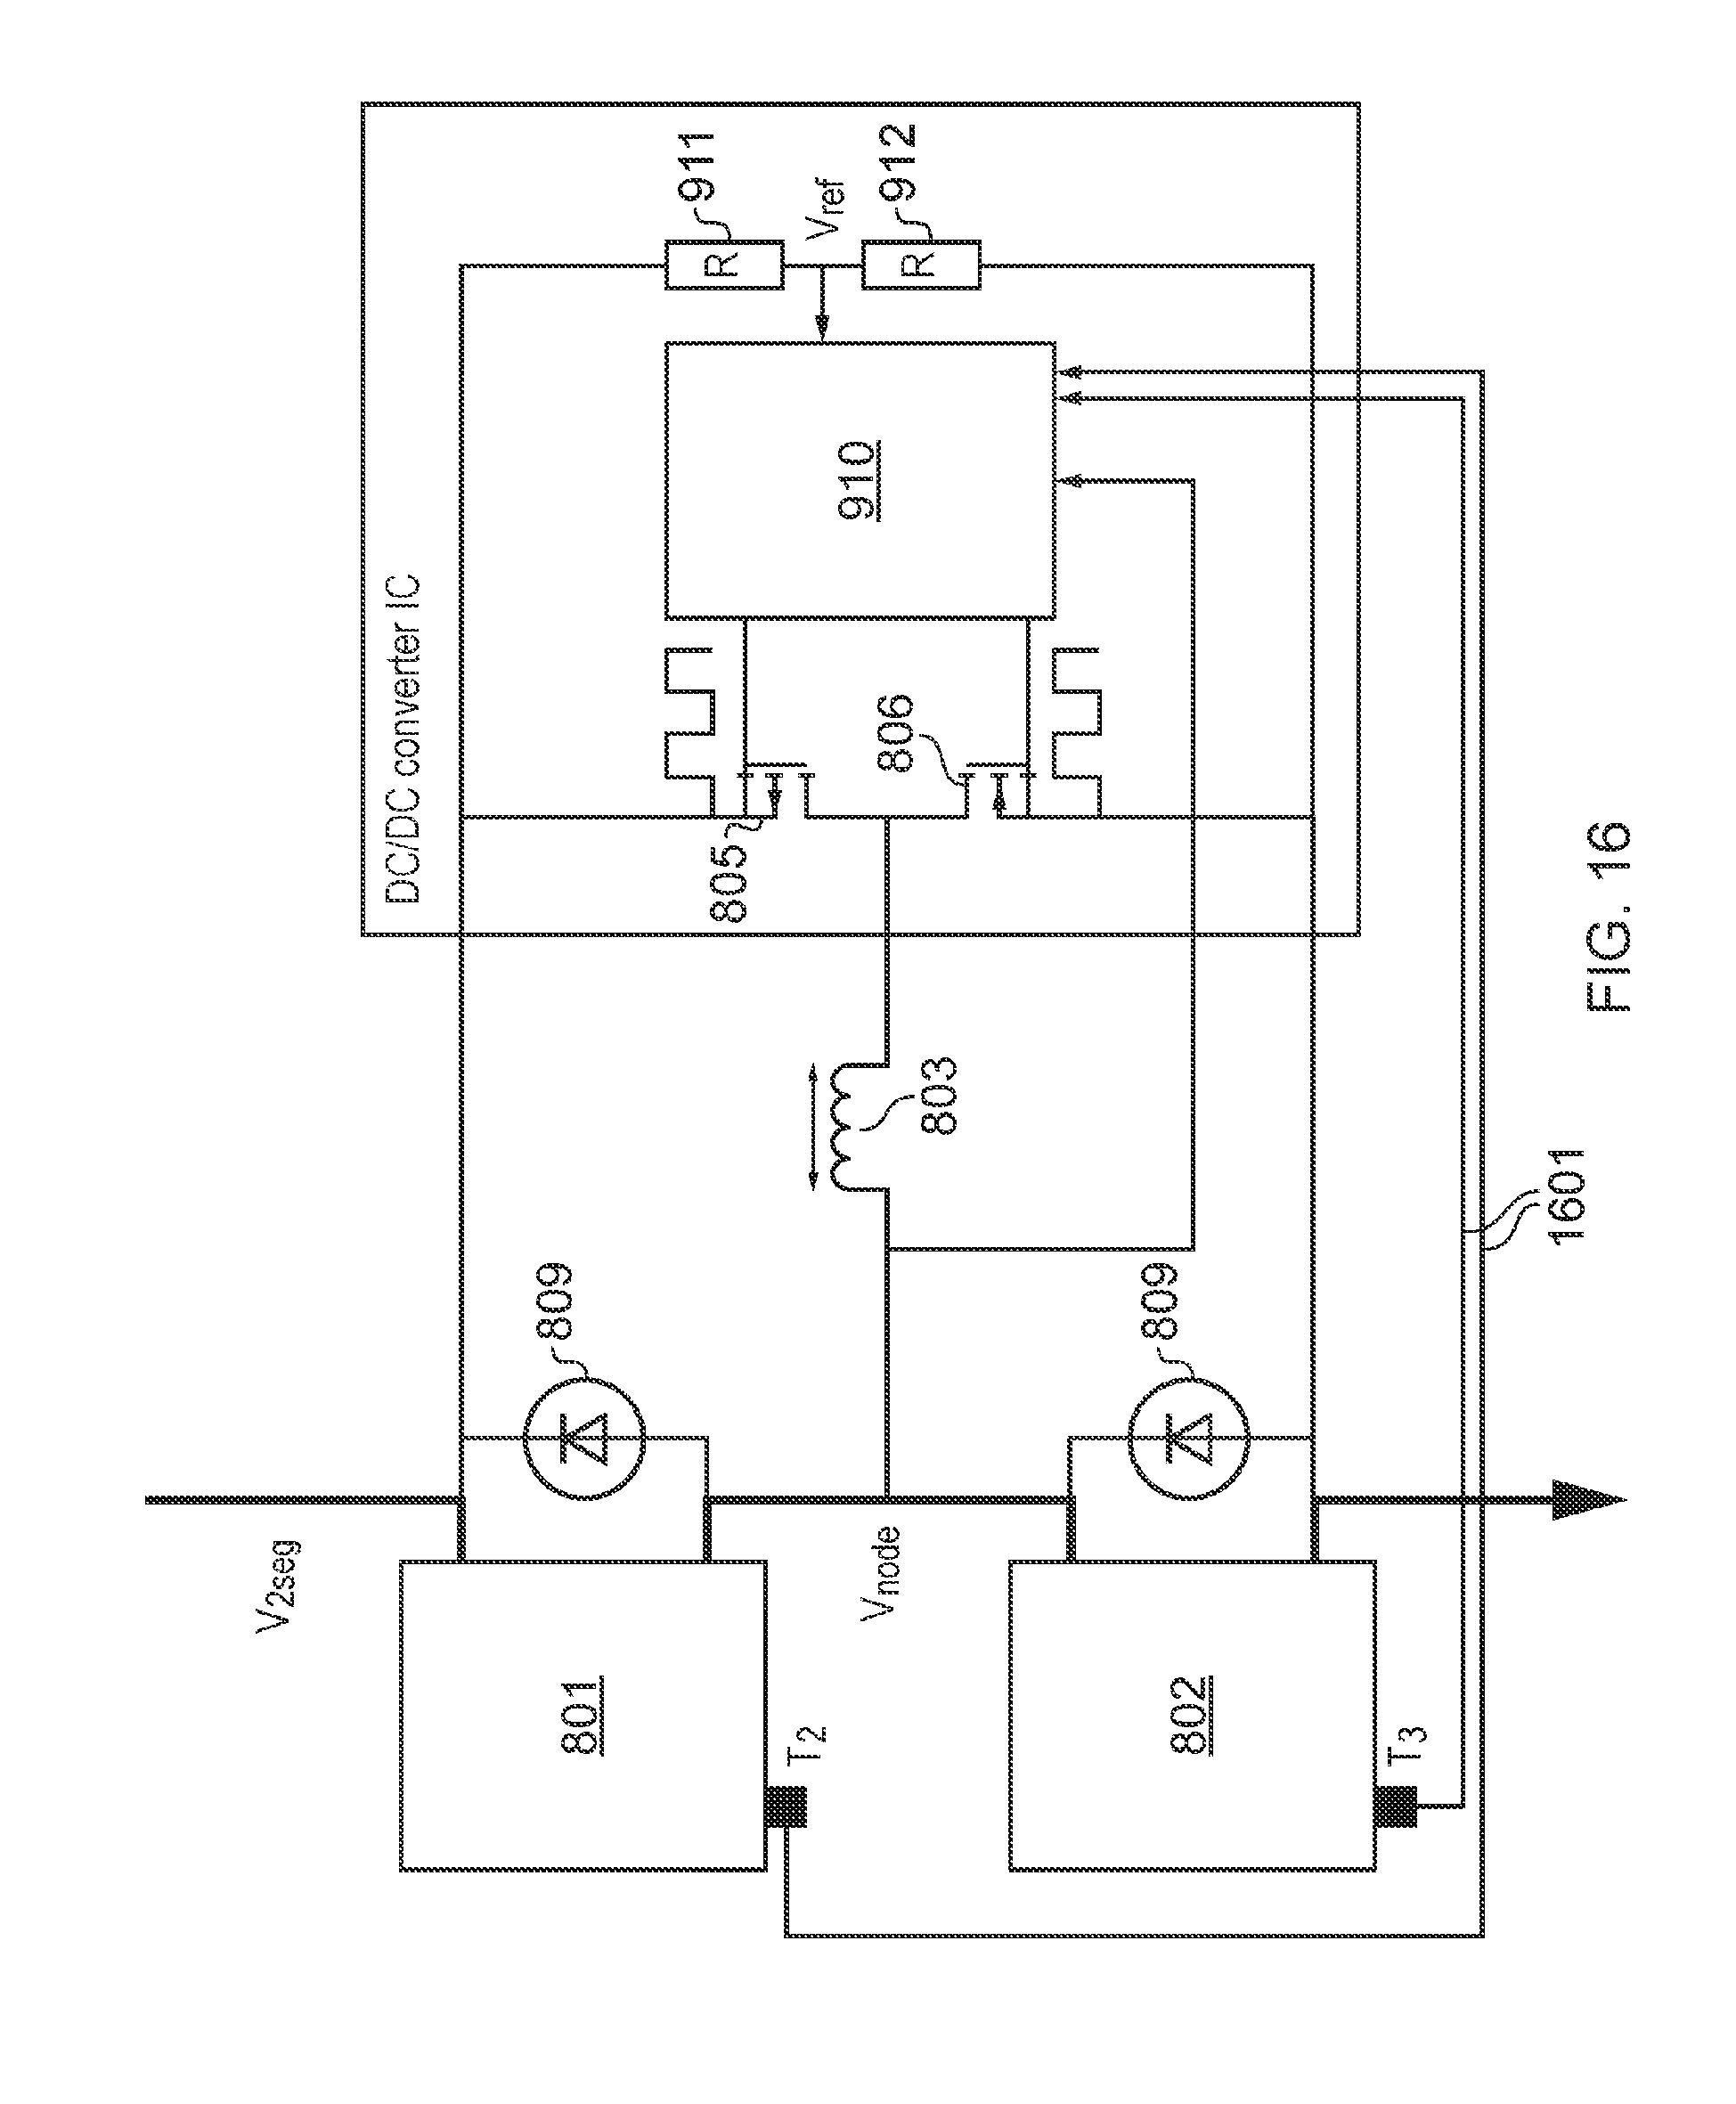 Stinger Battery Isolator Wiring Diagram